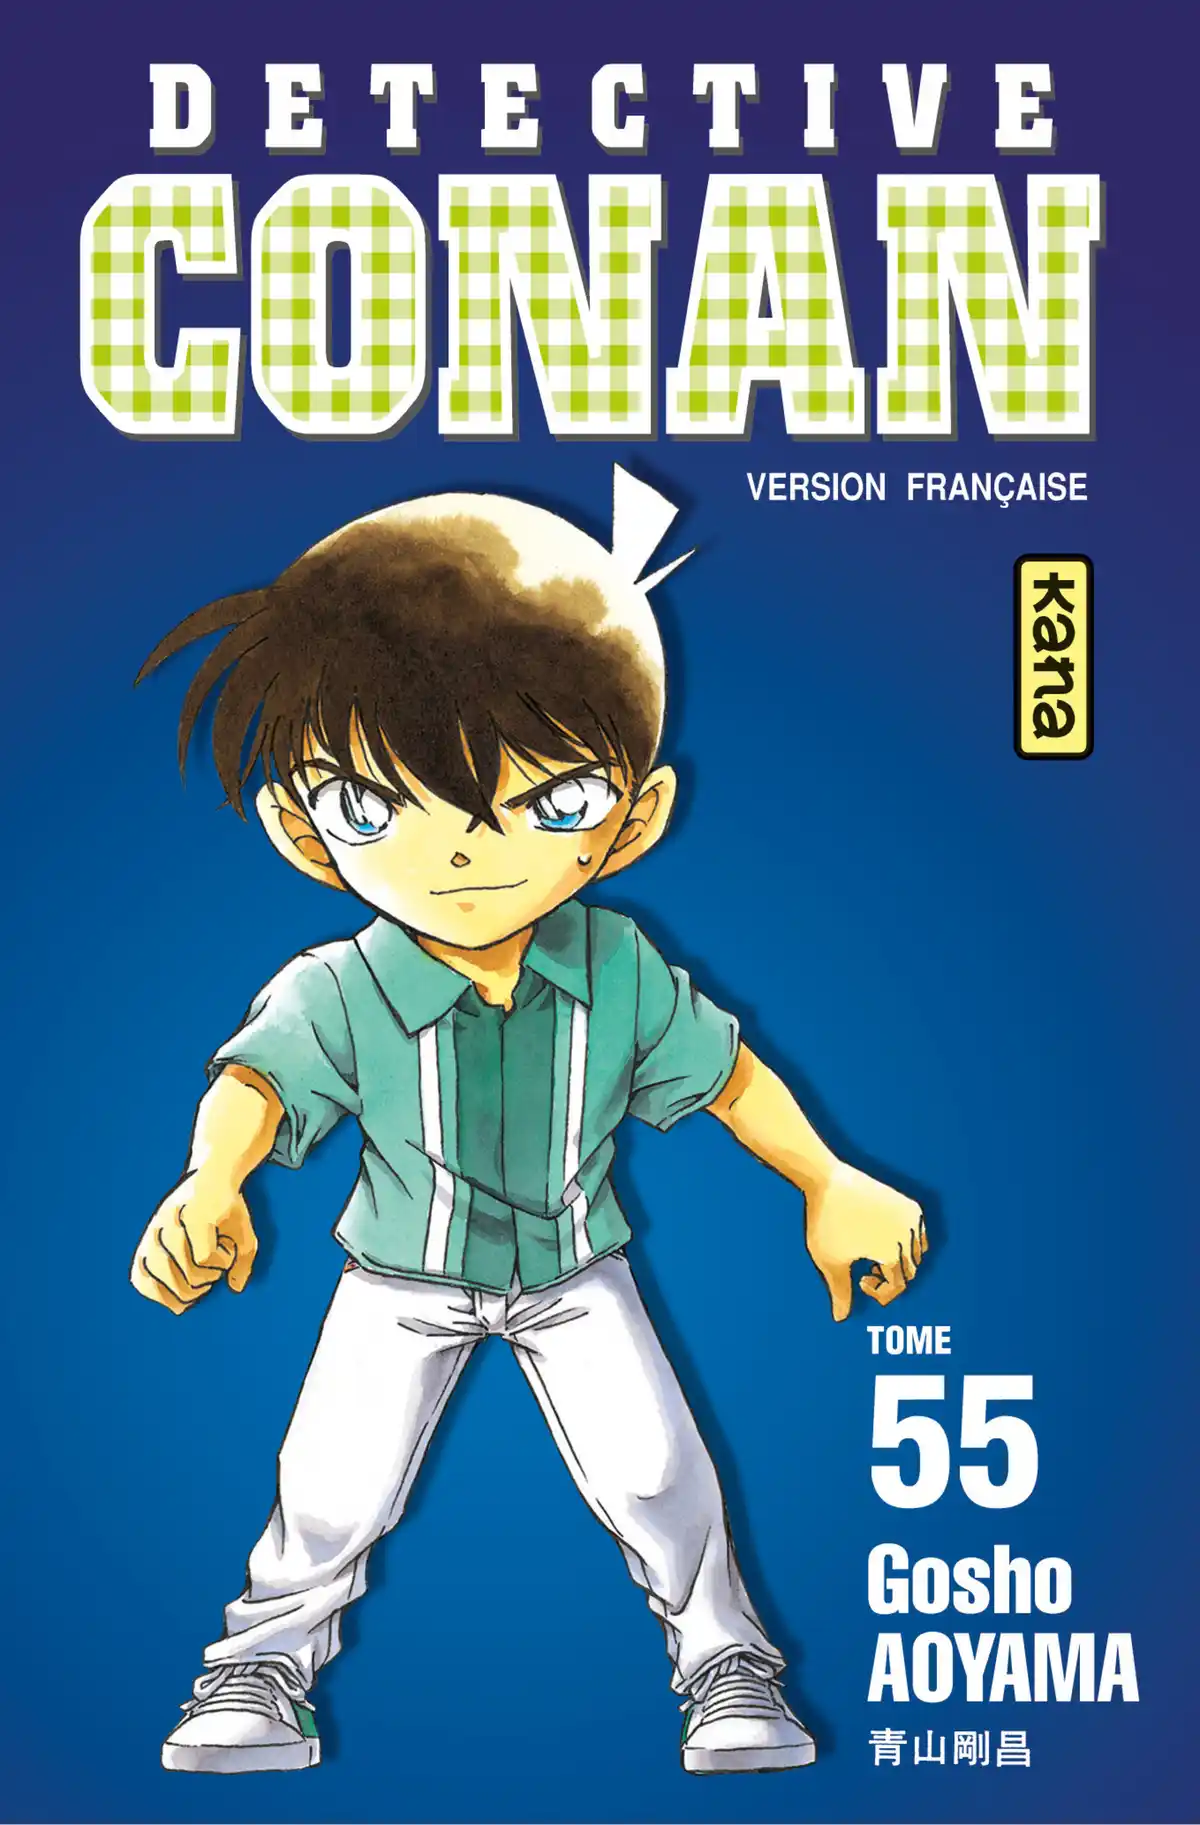 Détective Conan Volume 55 page 1